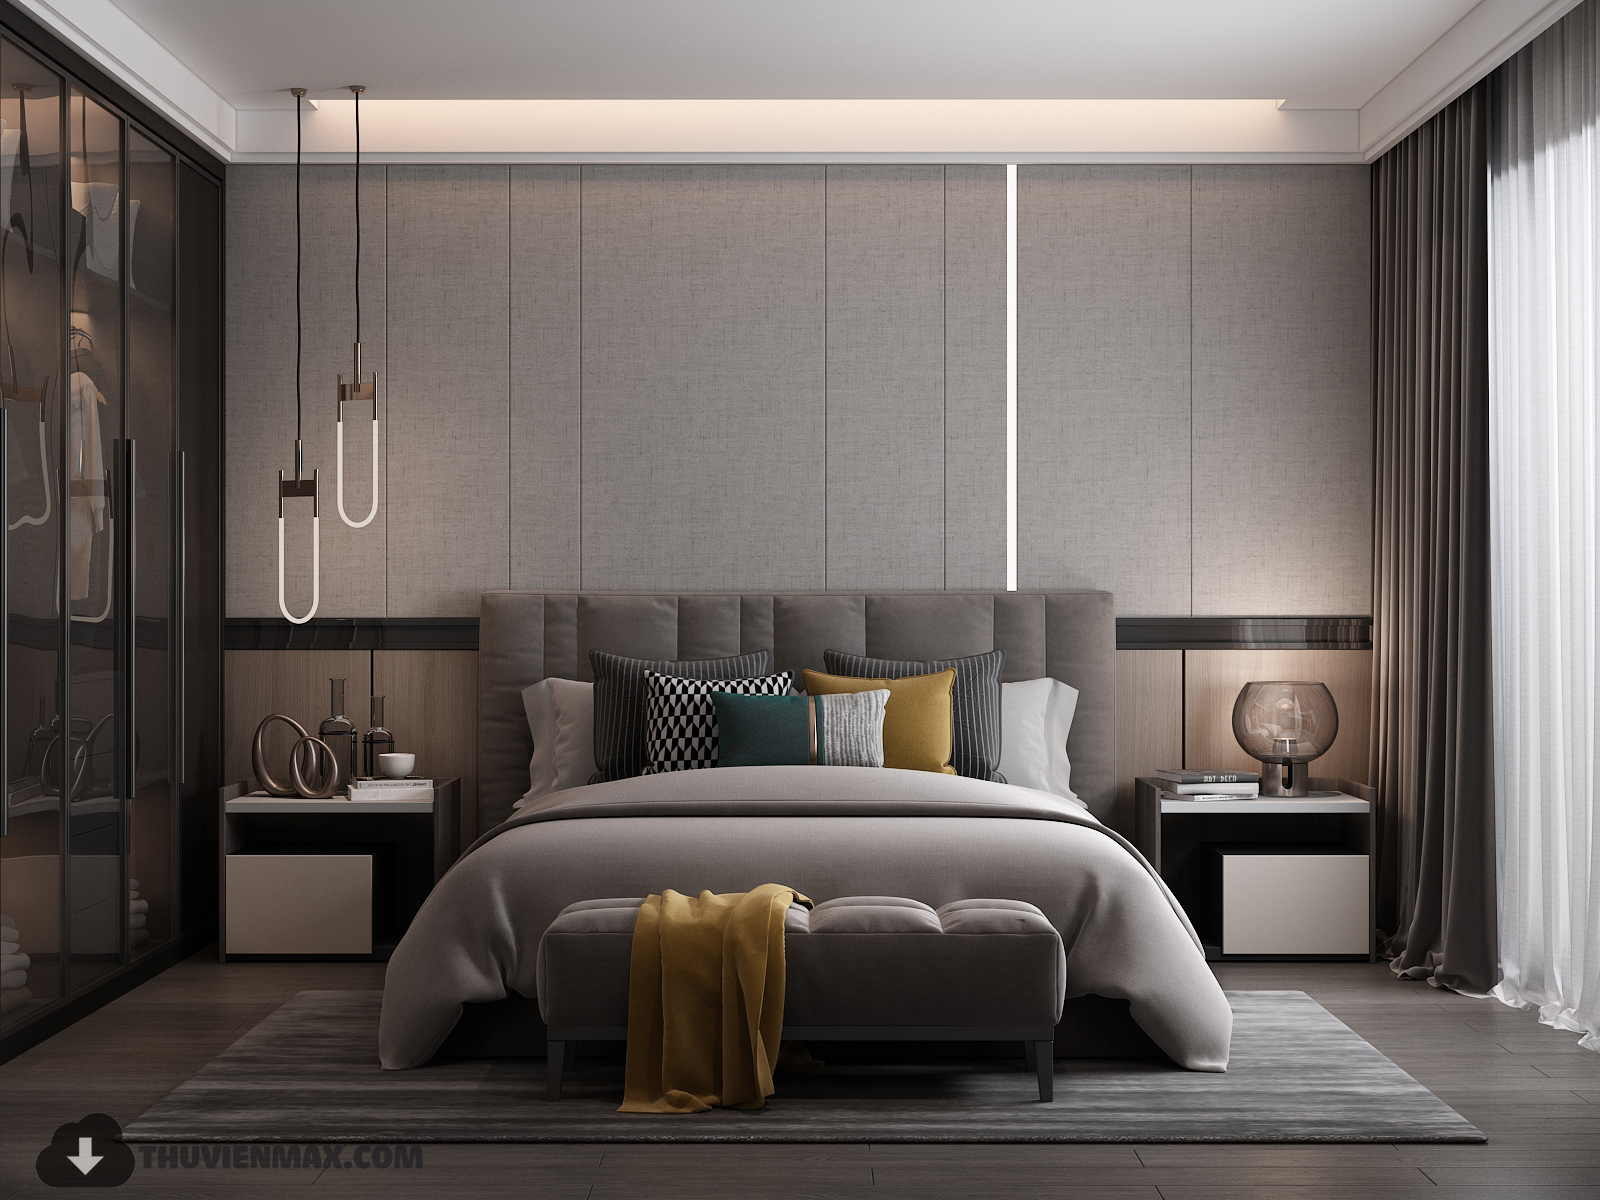 3D Interior Model Bed Room 0297 Scene 3dsmax